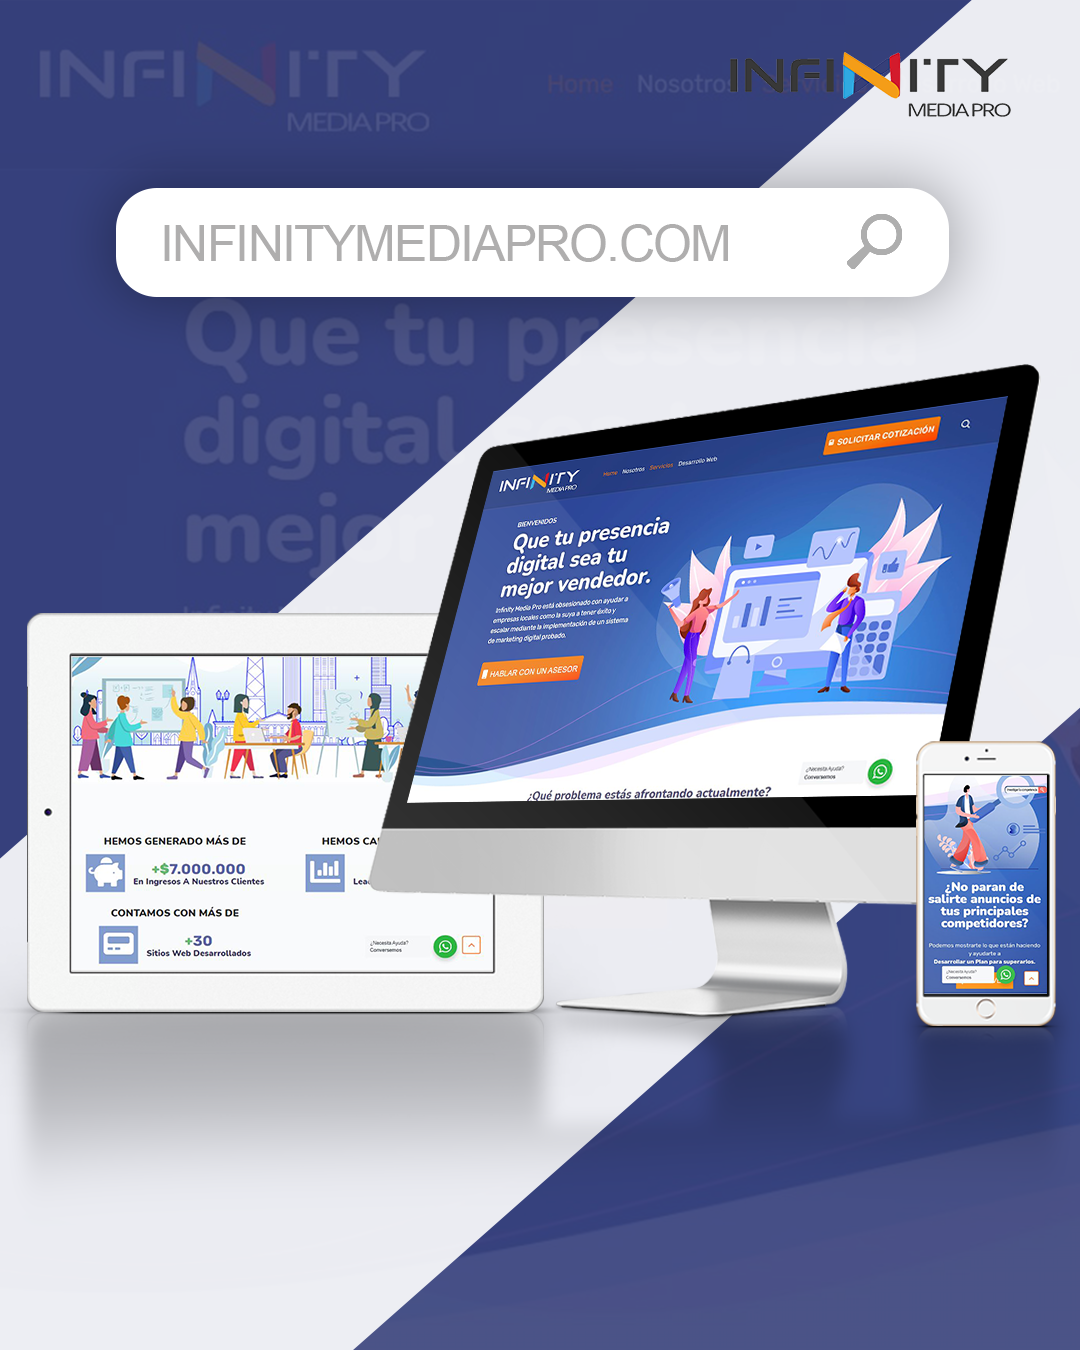 infinity-media-pro-agencia-de-marketing-puerto-rico-infinitymediapro.png